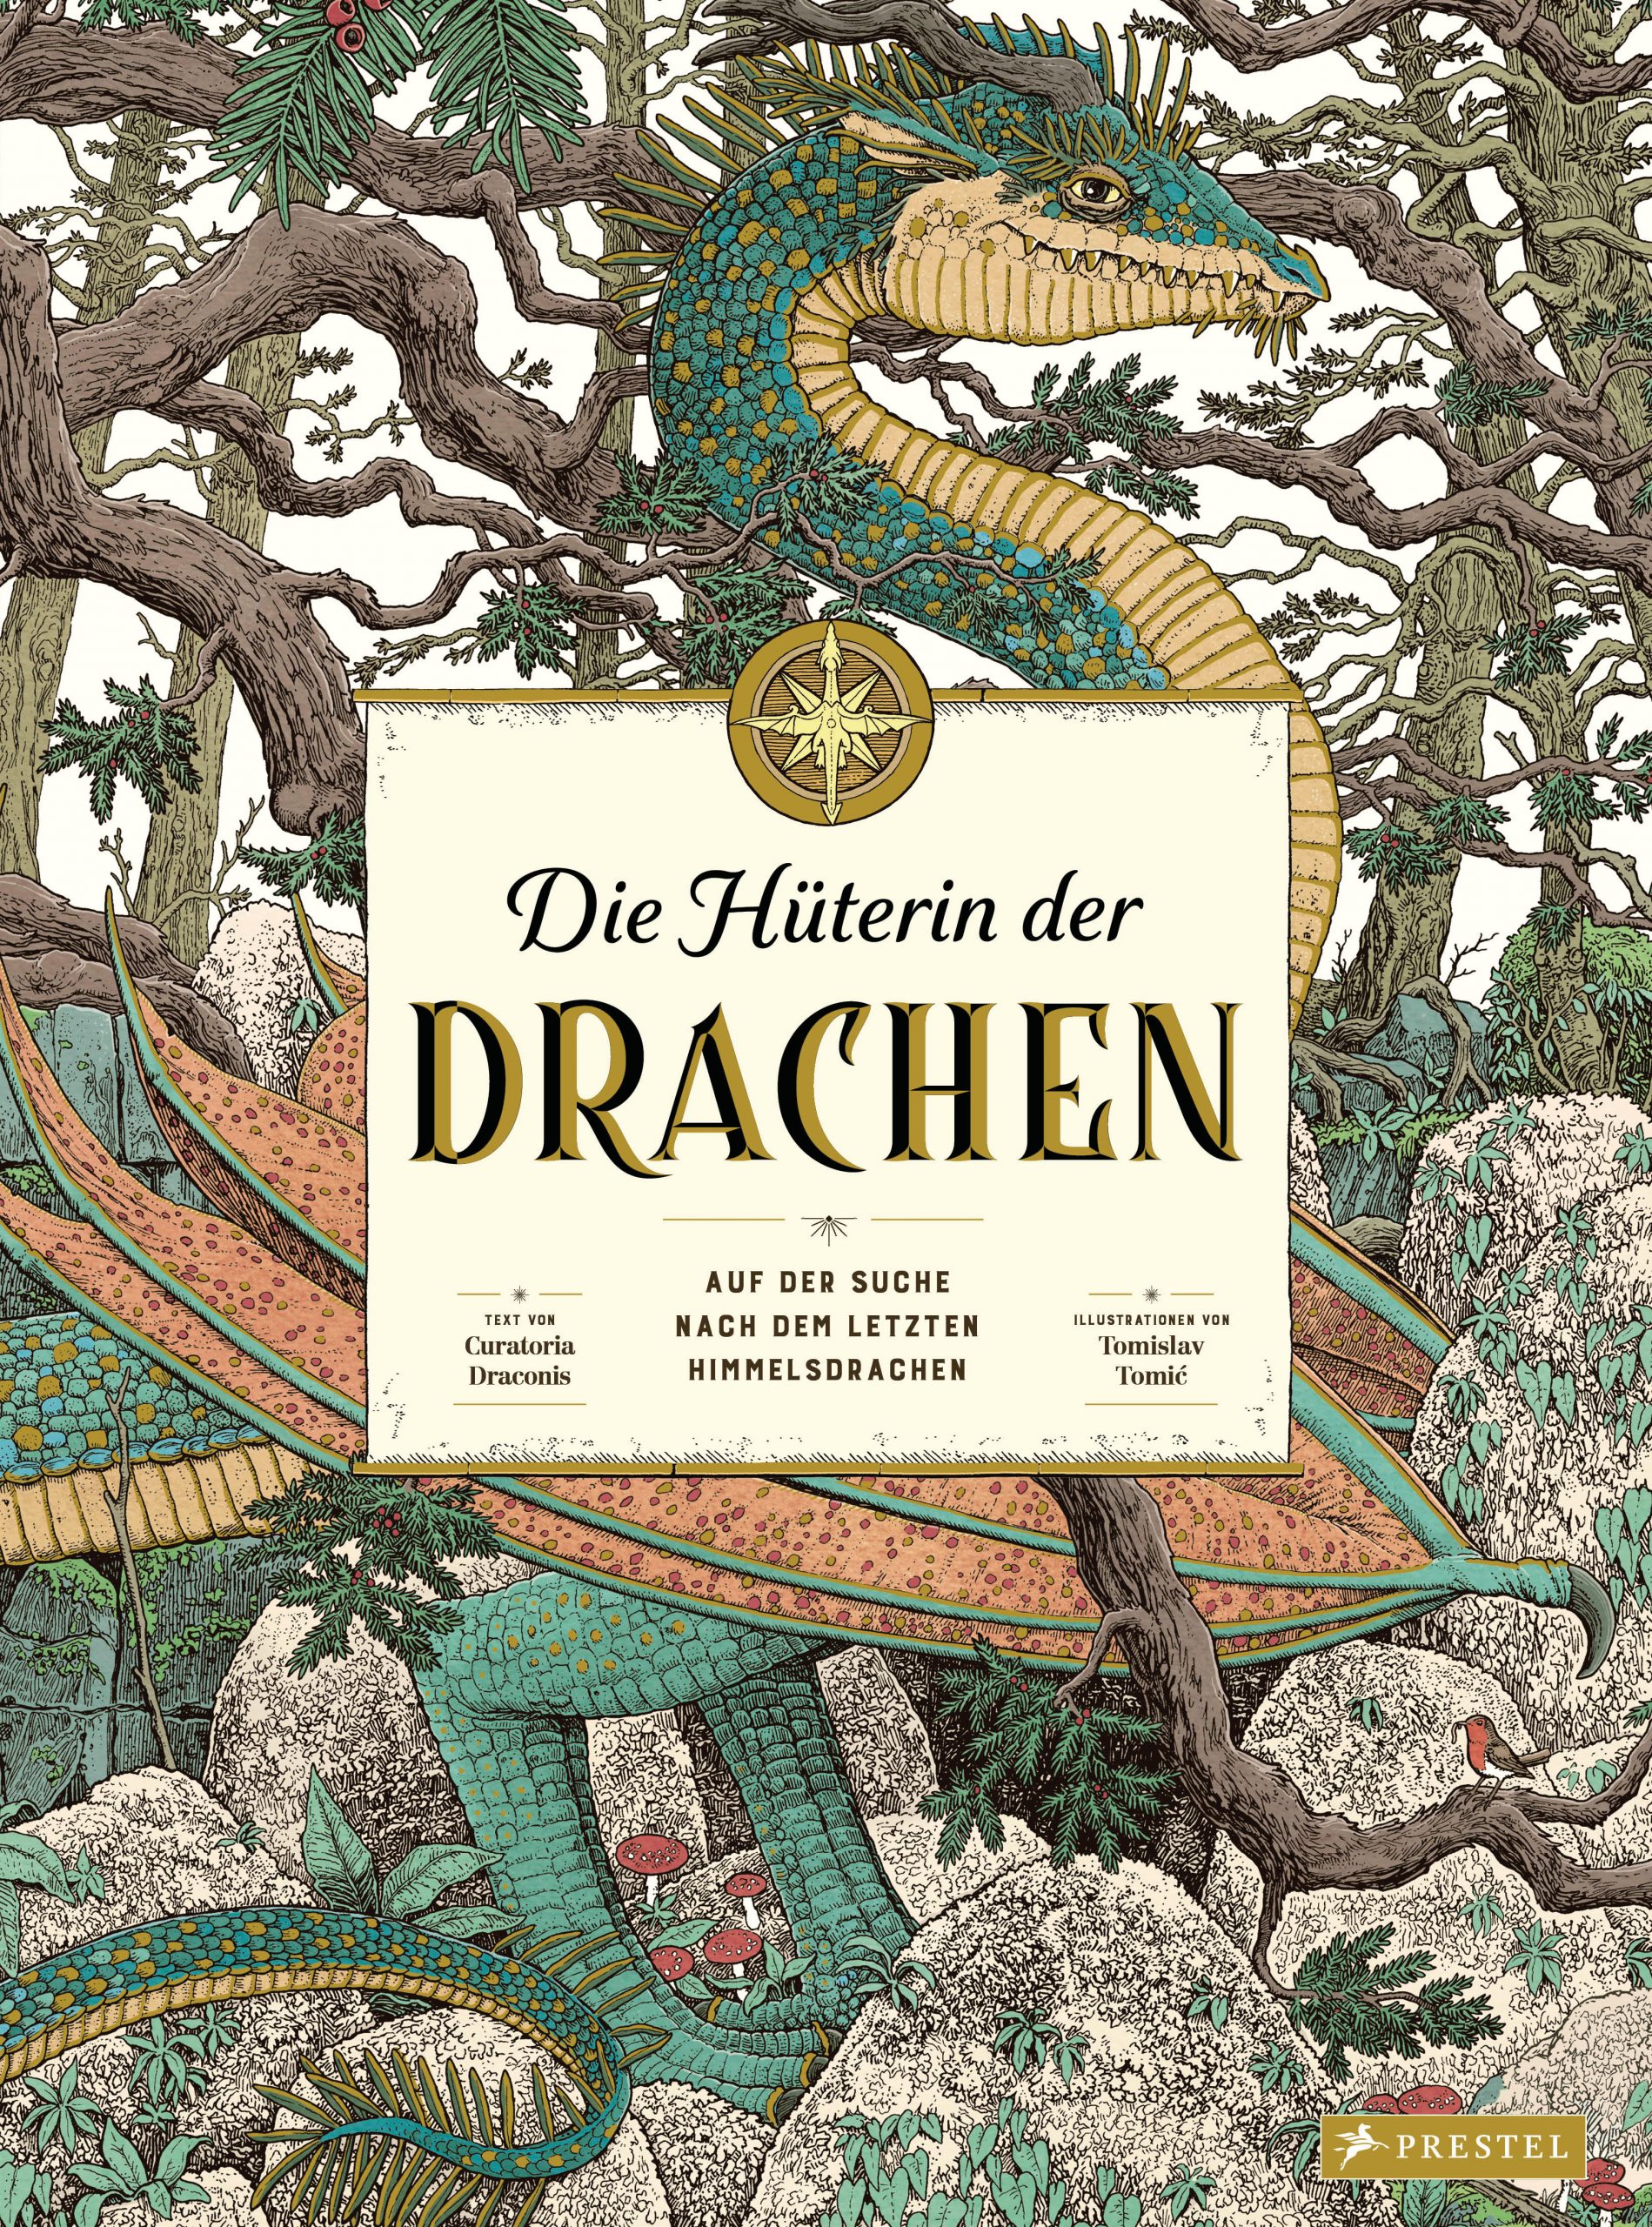 Die Hüterin der Drachen. Auf der Suche nach dem letzten Himmelsdrachen von Curatoria Draconis Parkbuchhandlung Buchhandlung Bonn Bad Godesberg